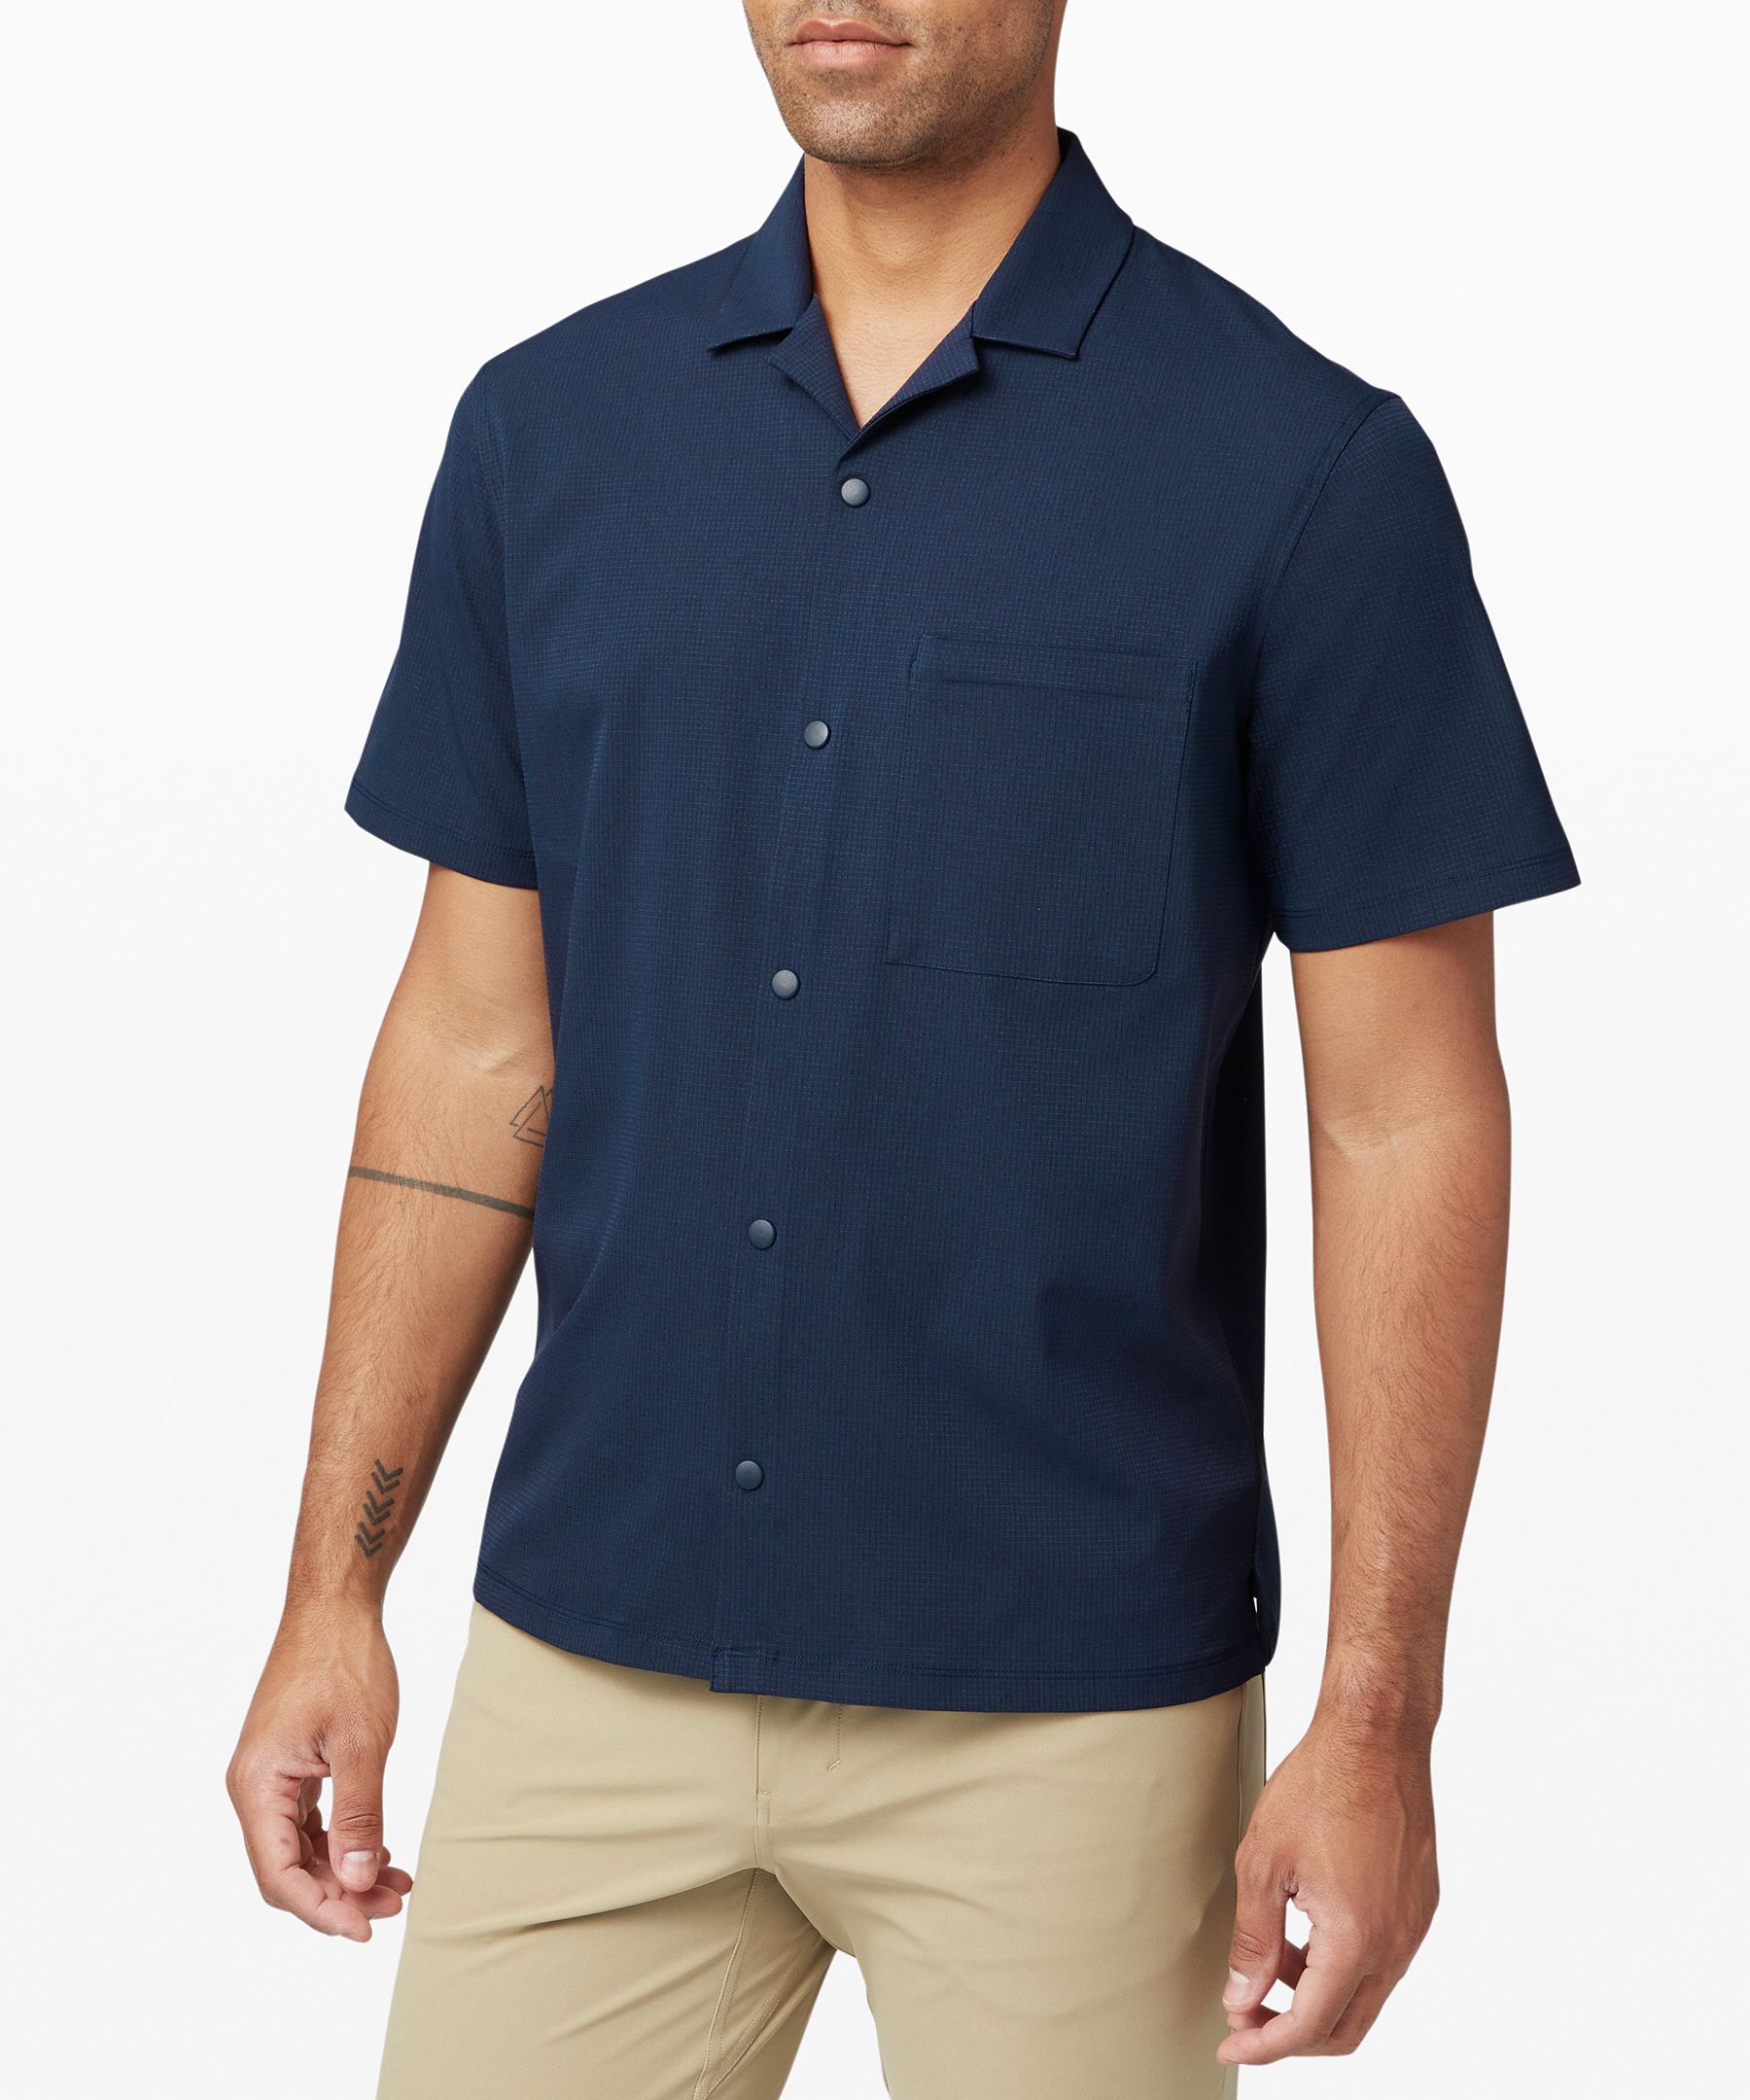 Linen SS Camp Shirt, Men's Shirts